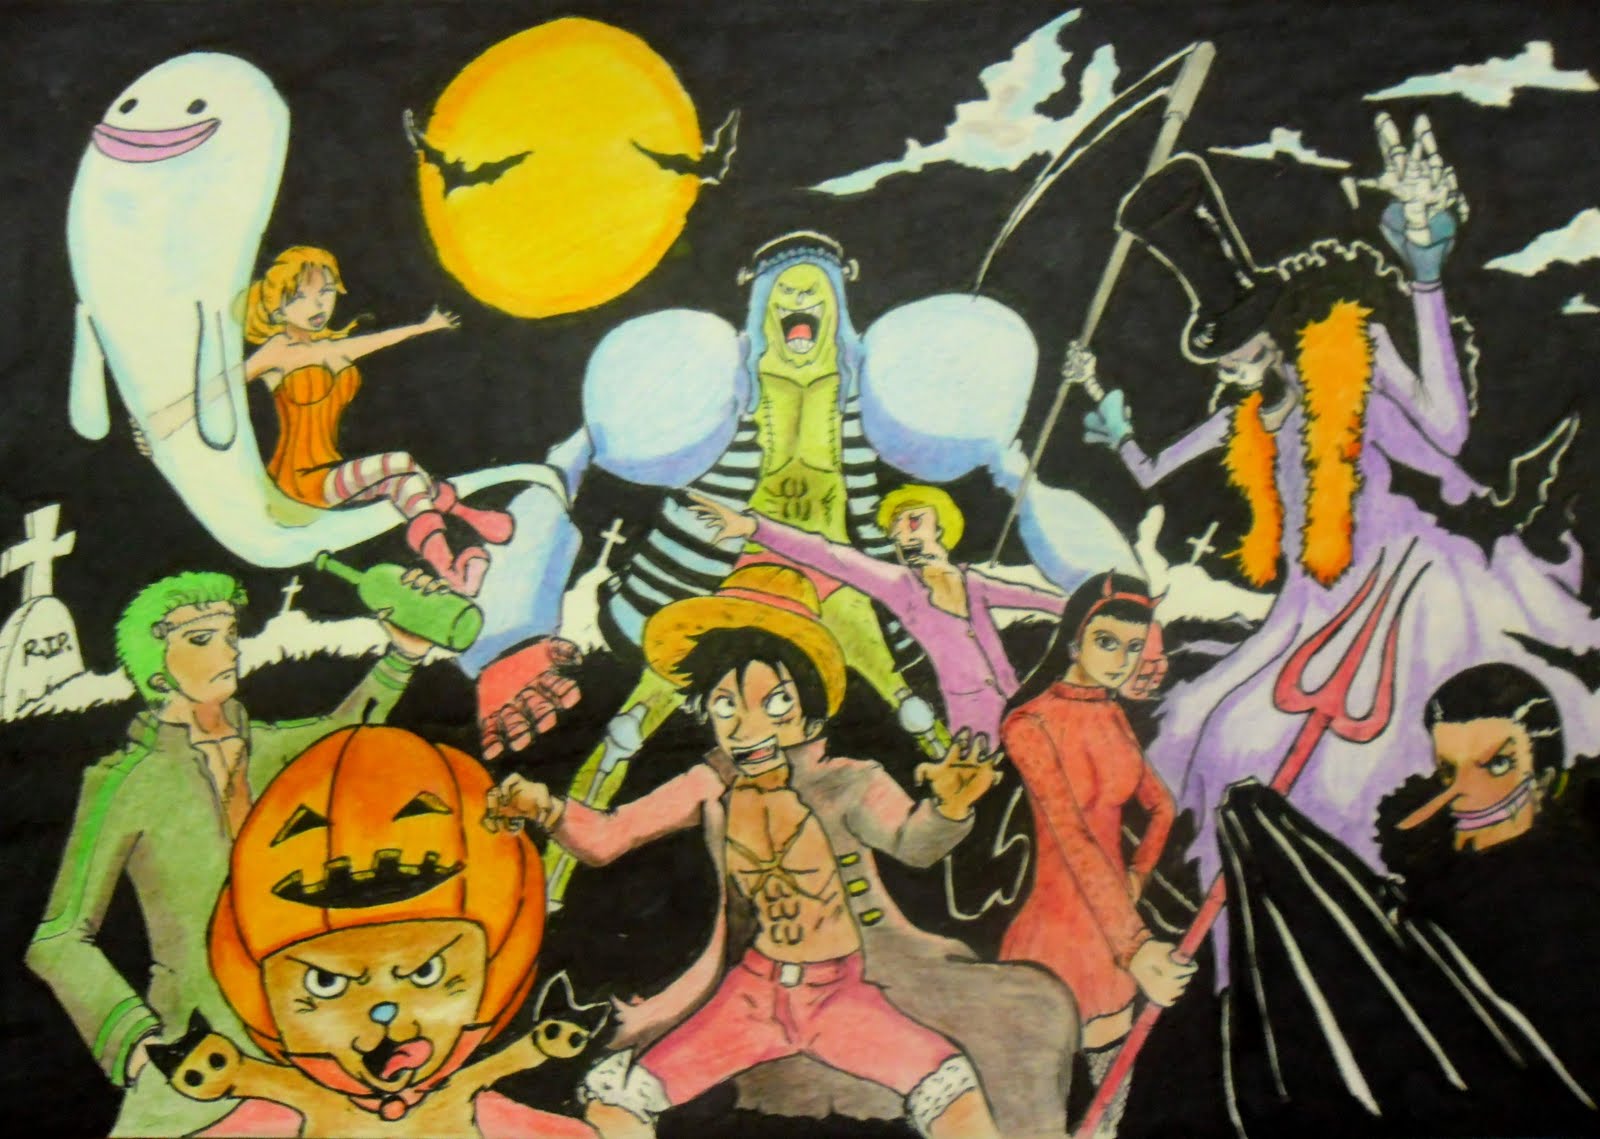 Résultat de recherche d'images pour "image mangas joyeux halloween"